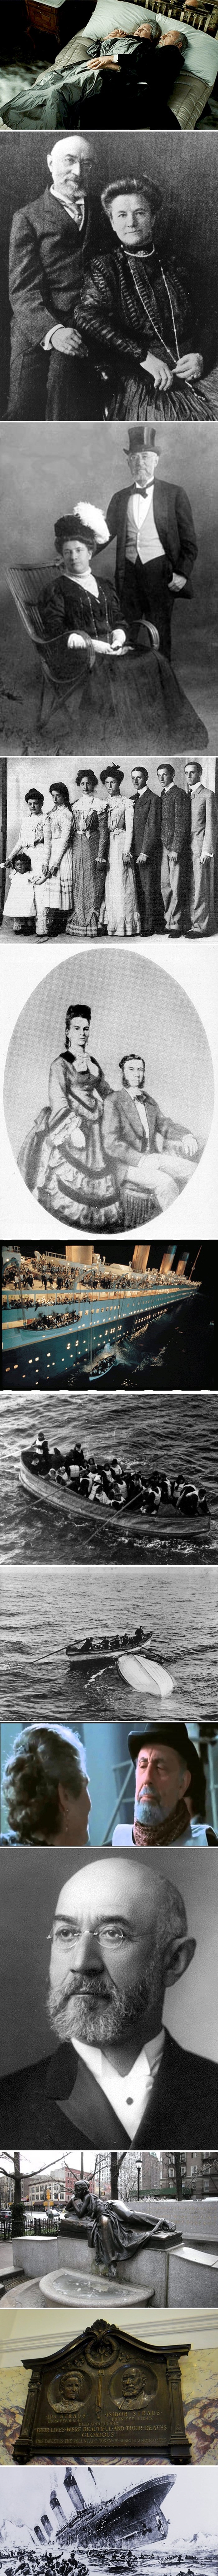 Sjećate li se starijeg para iz filma "Titanic" koji umire zajedno? Njihova priča je stvarna i slomit će vam srce